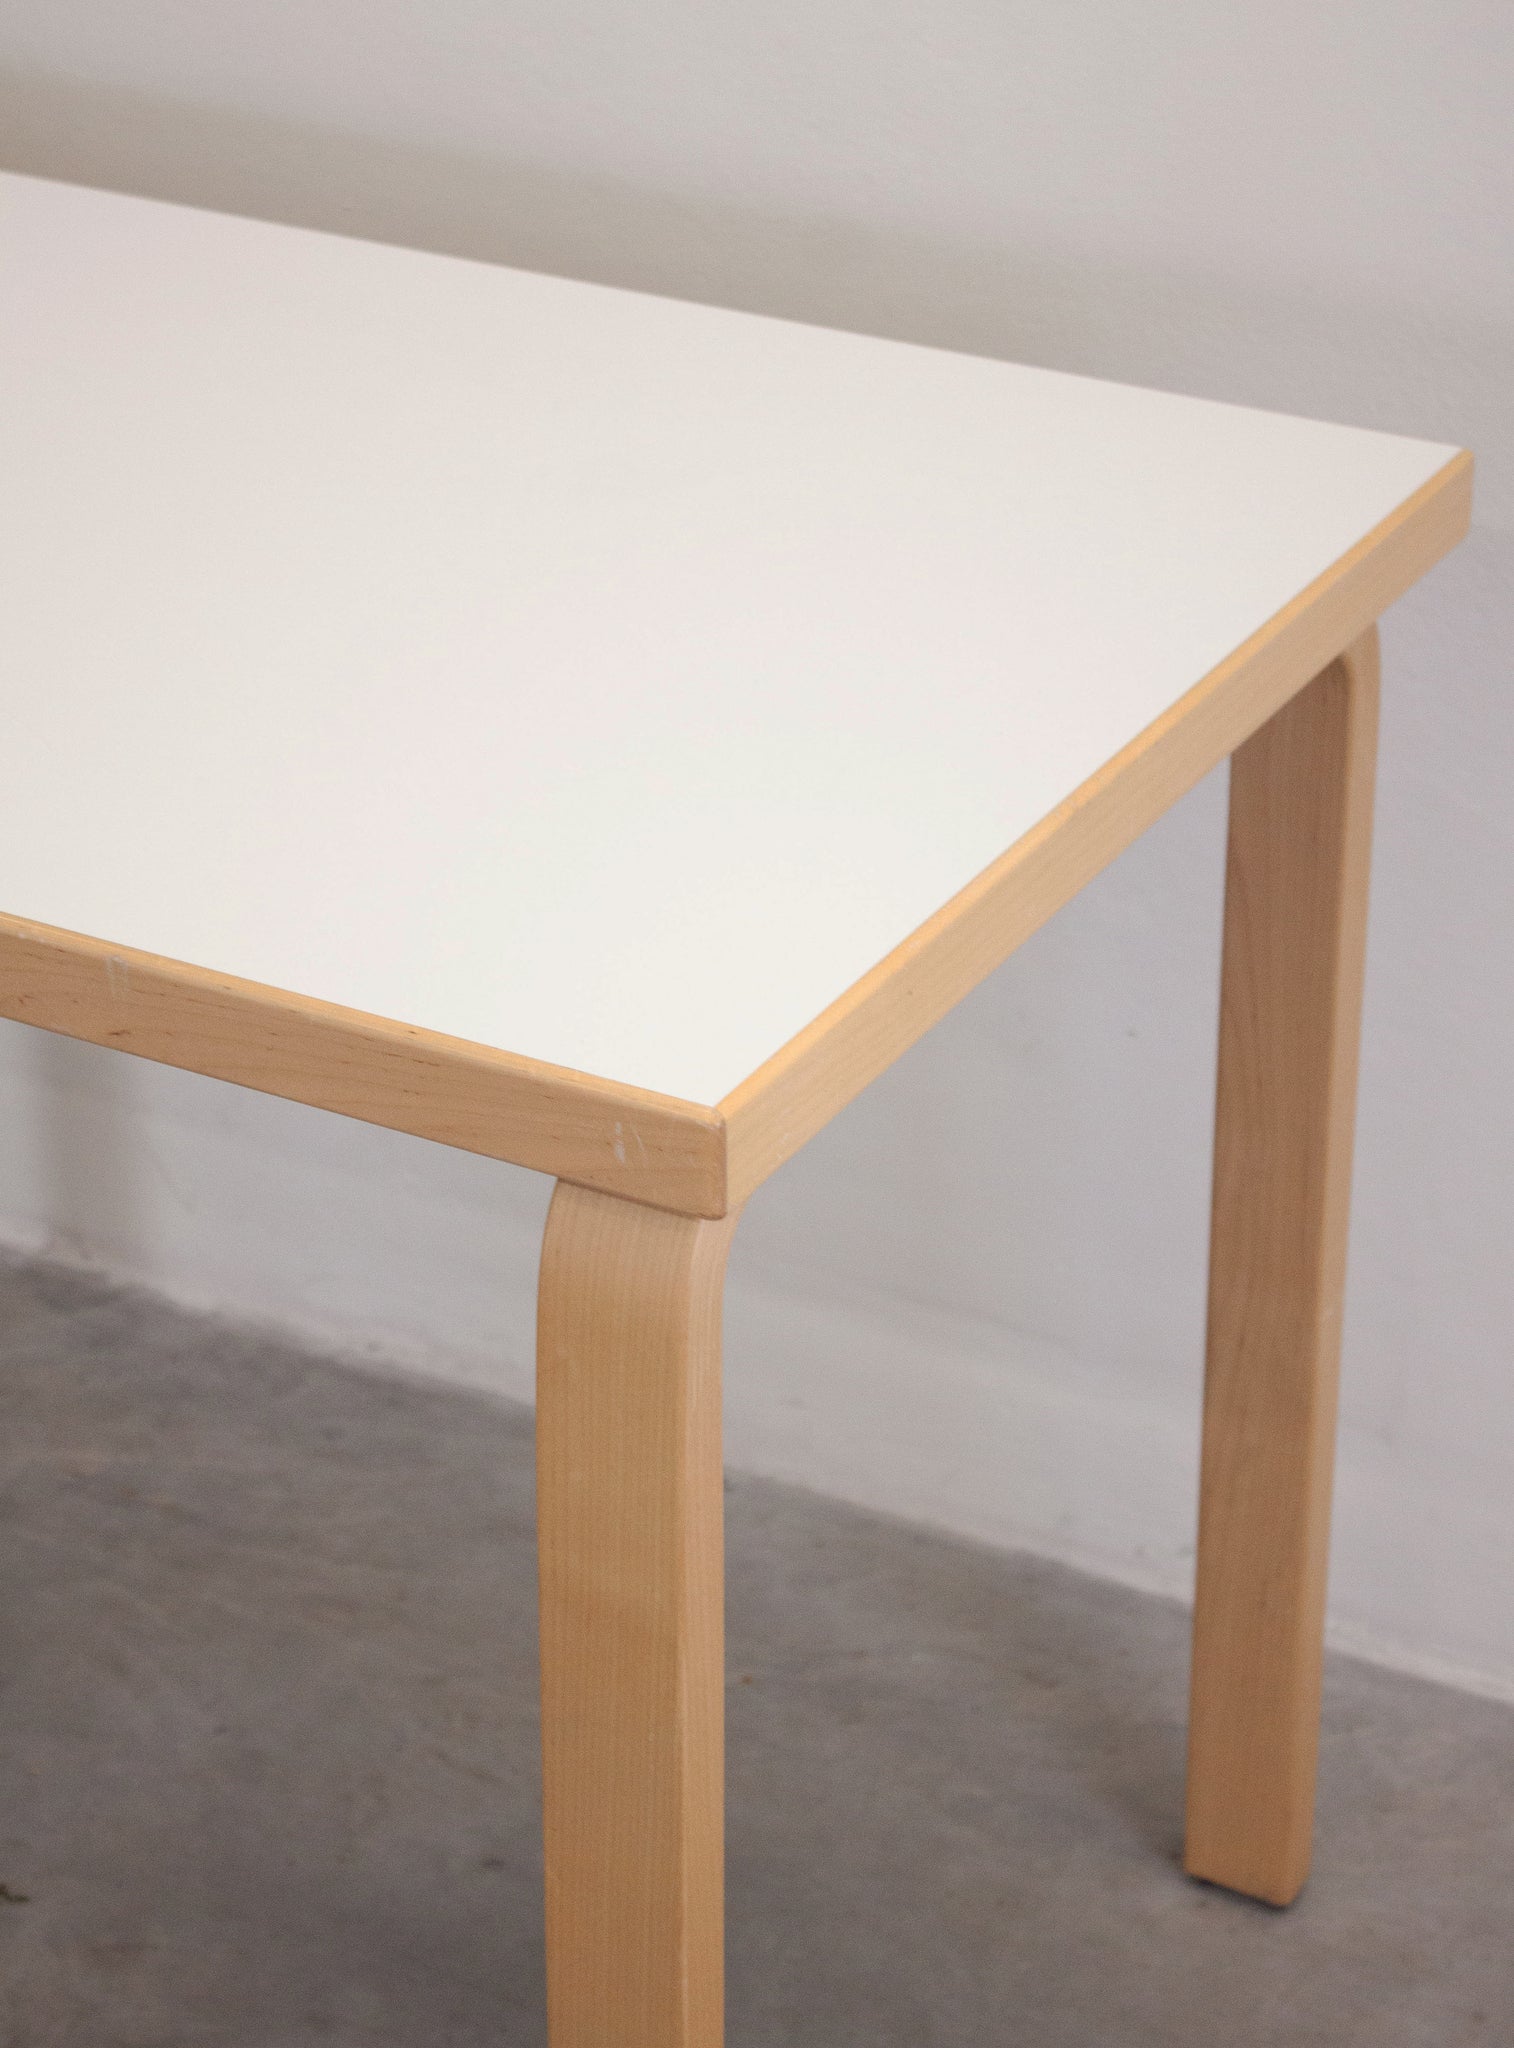 Artek Dining Table or Desk by Alvar Aalto (White)